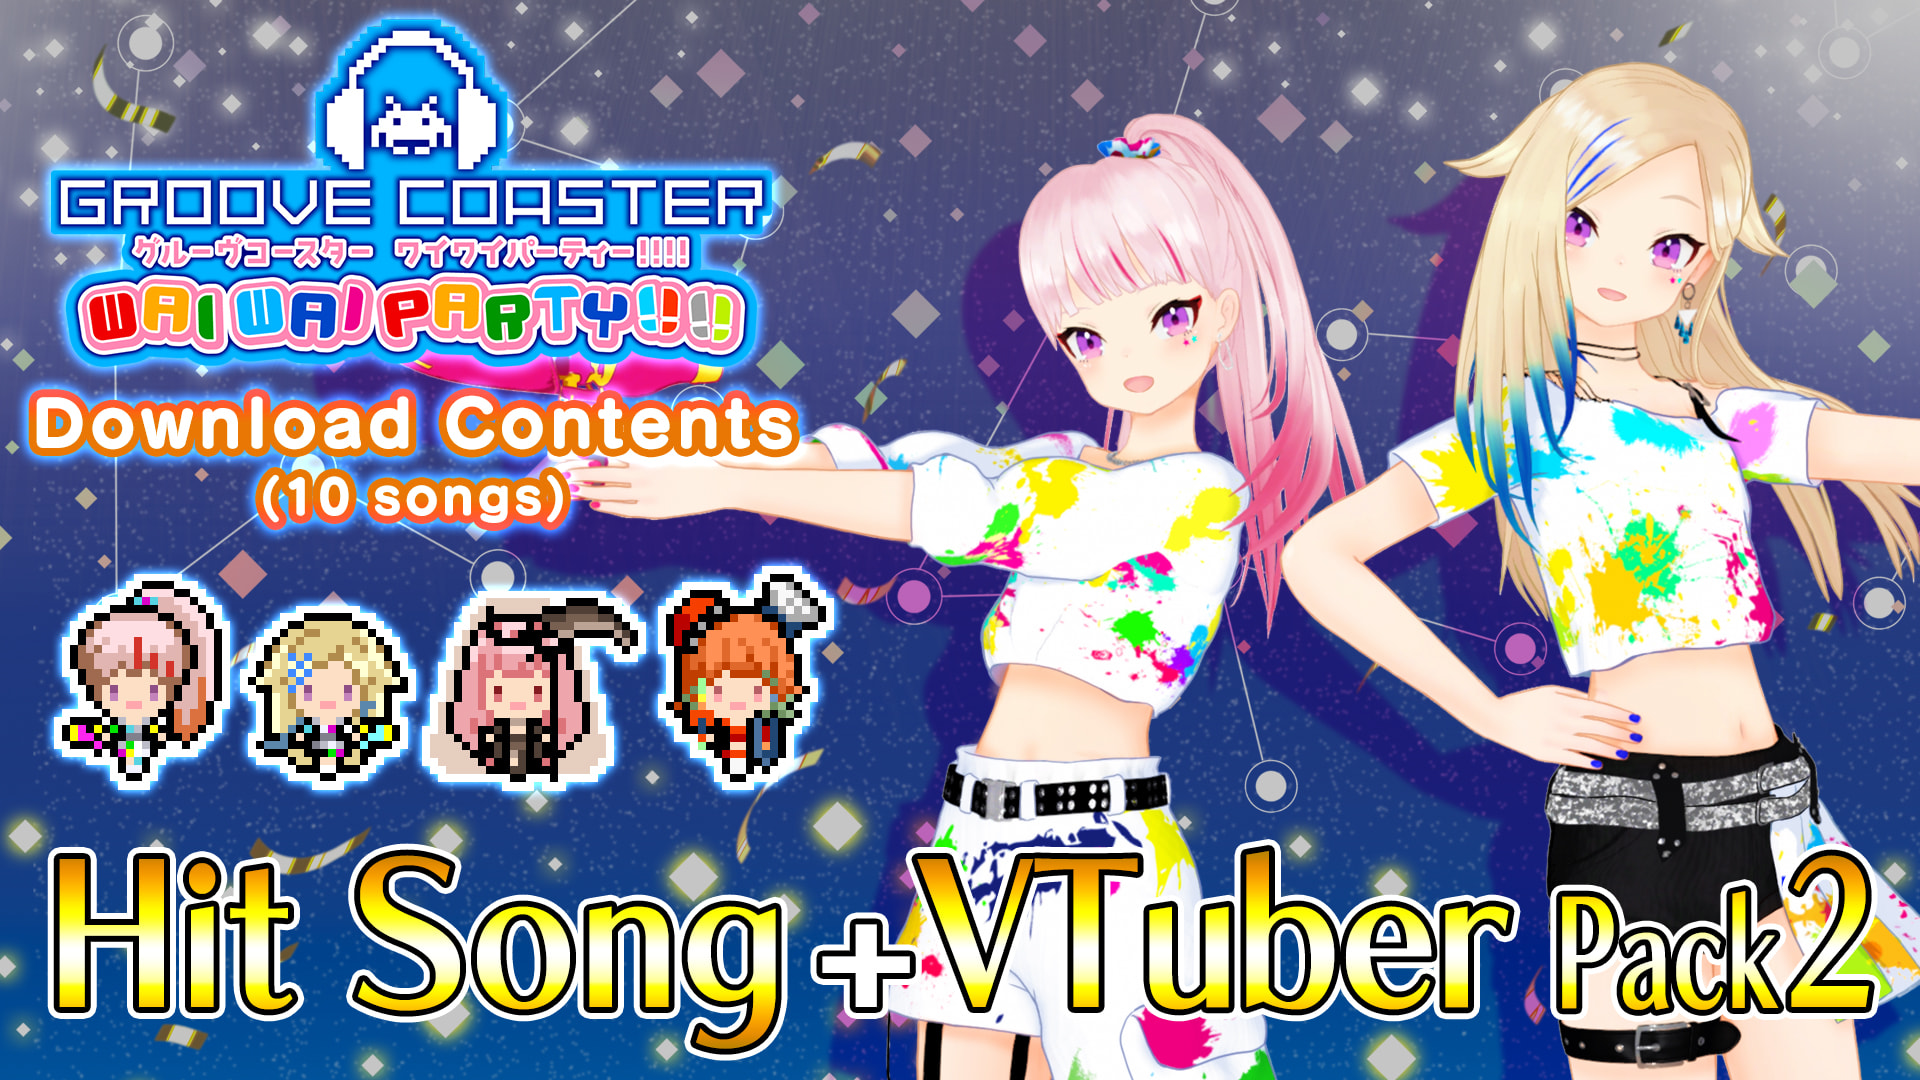 Hit Song + VTuber Pack 2